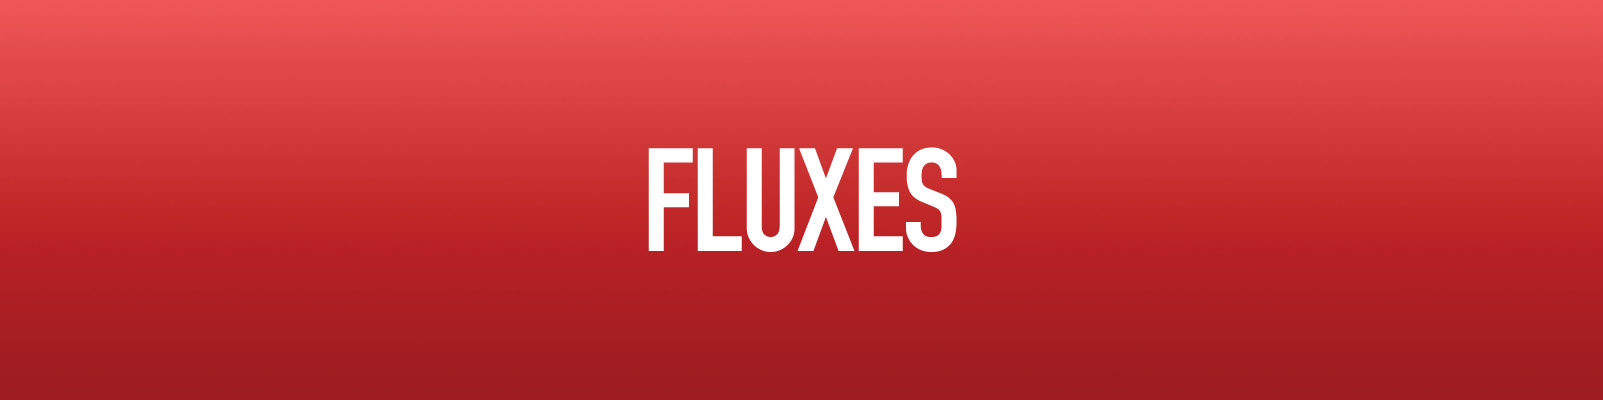 Fluxes